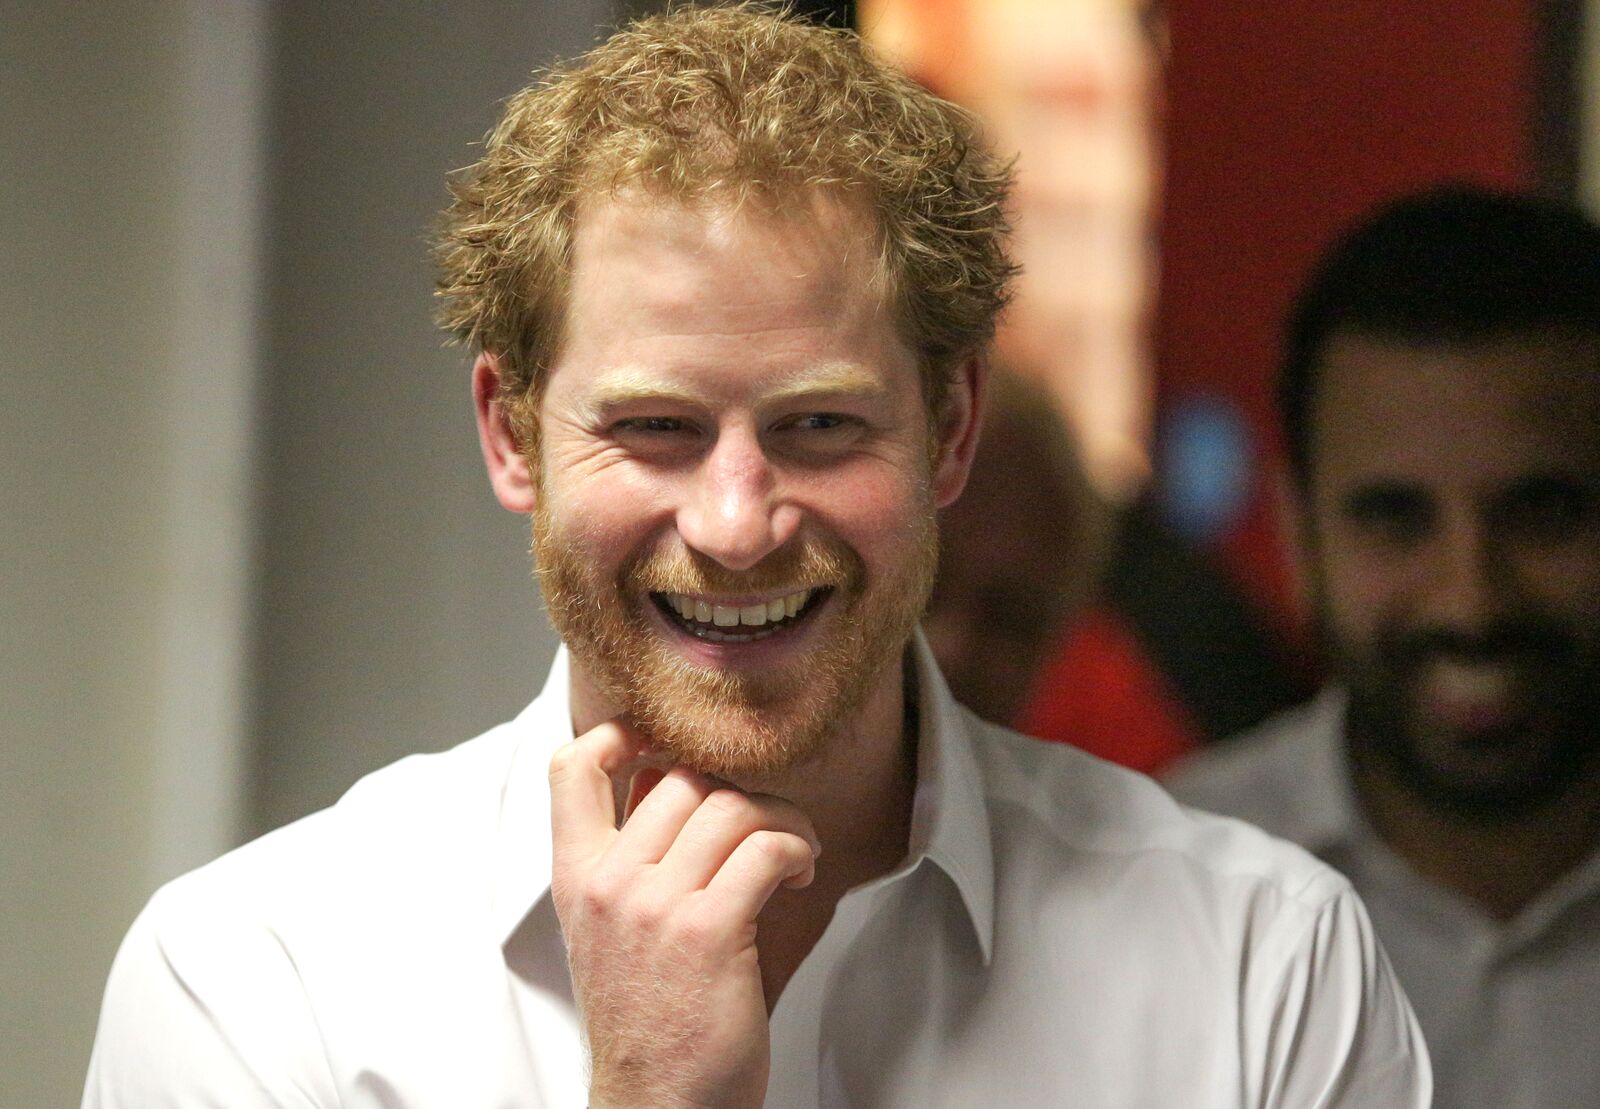 Le Prince Harry avec un joli sourire | Photo : Getty Images